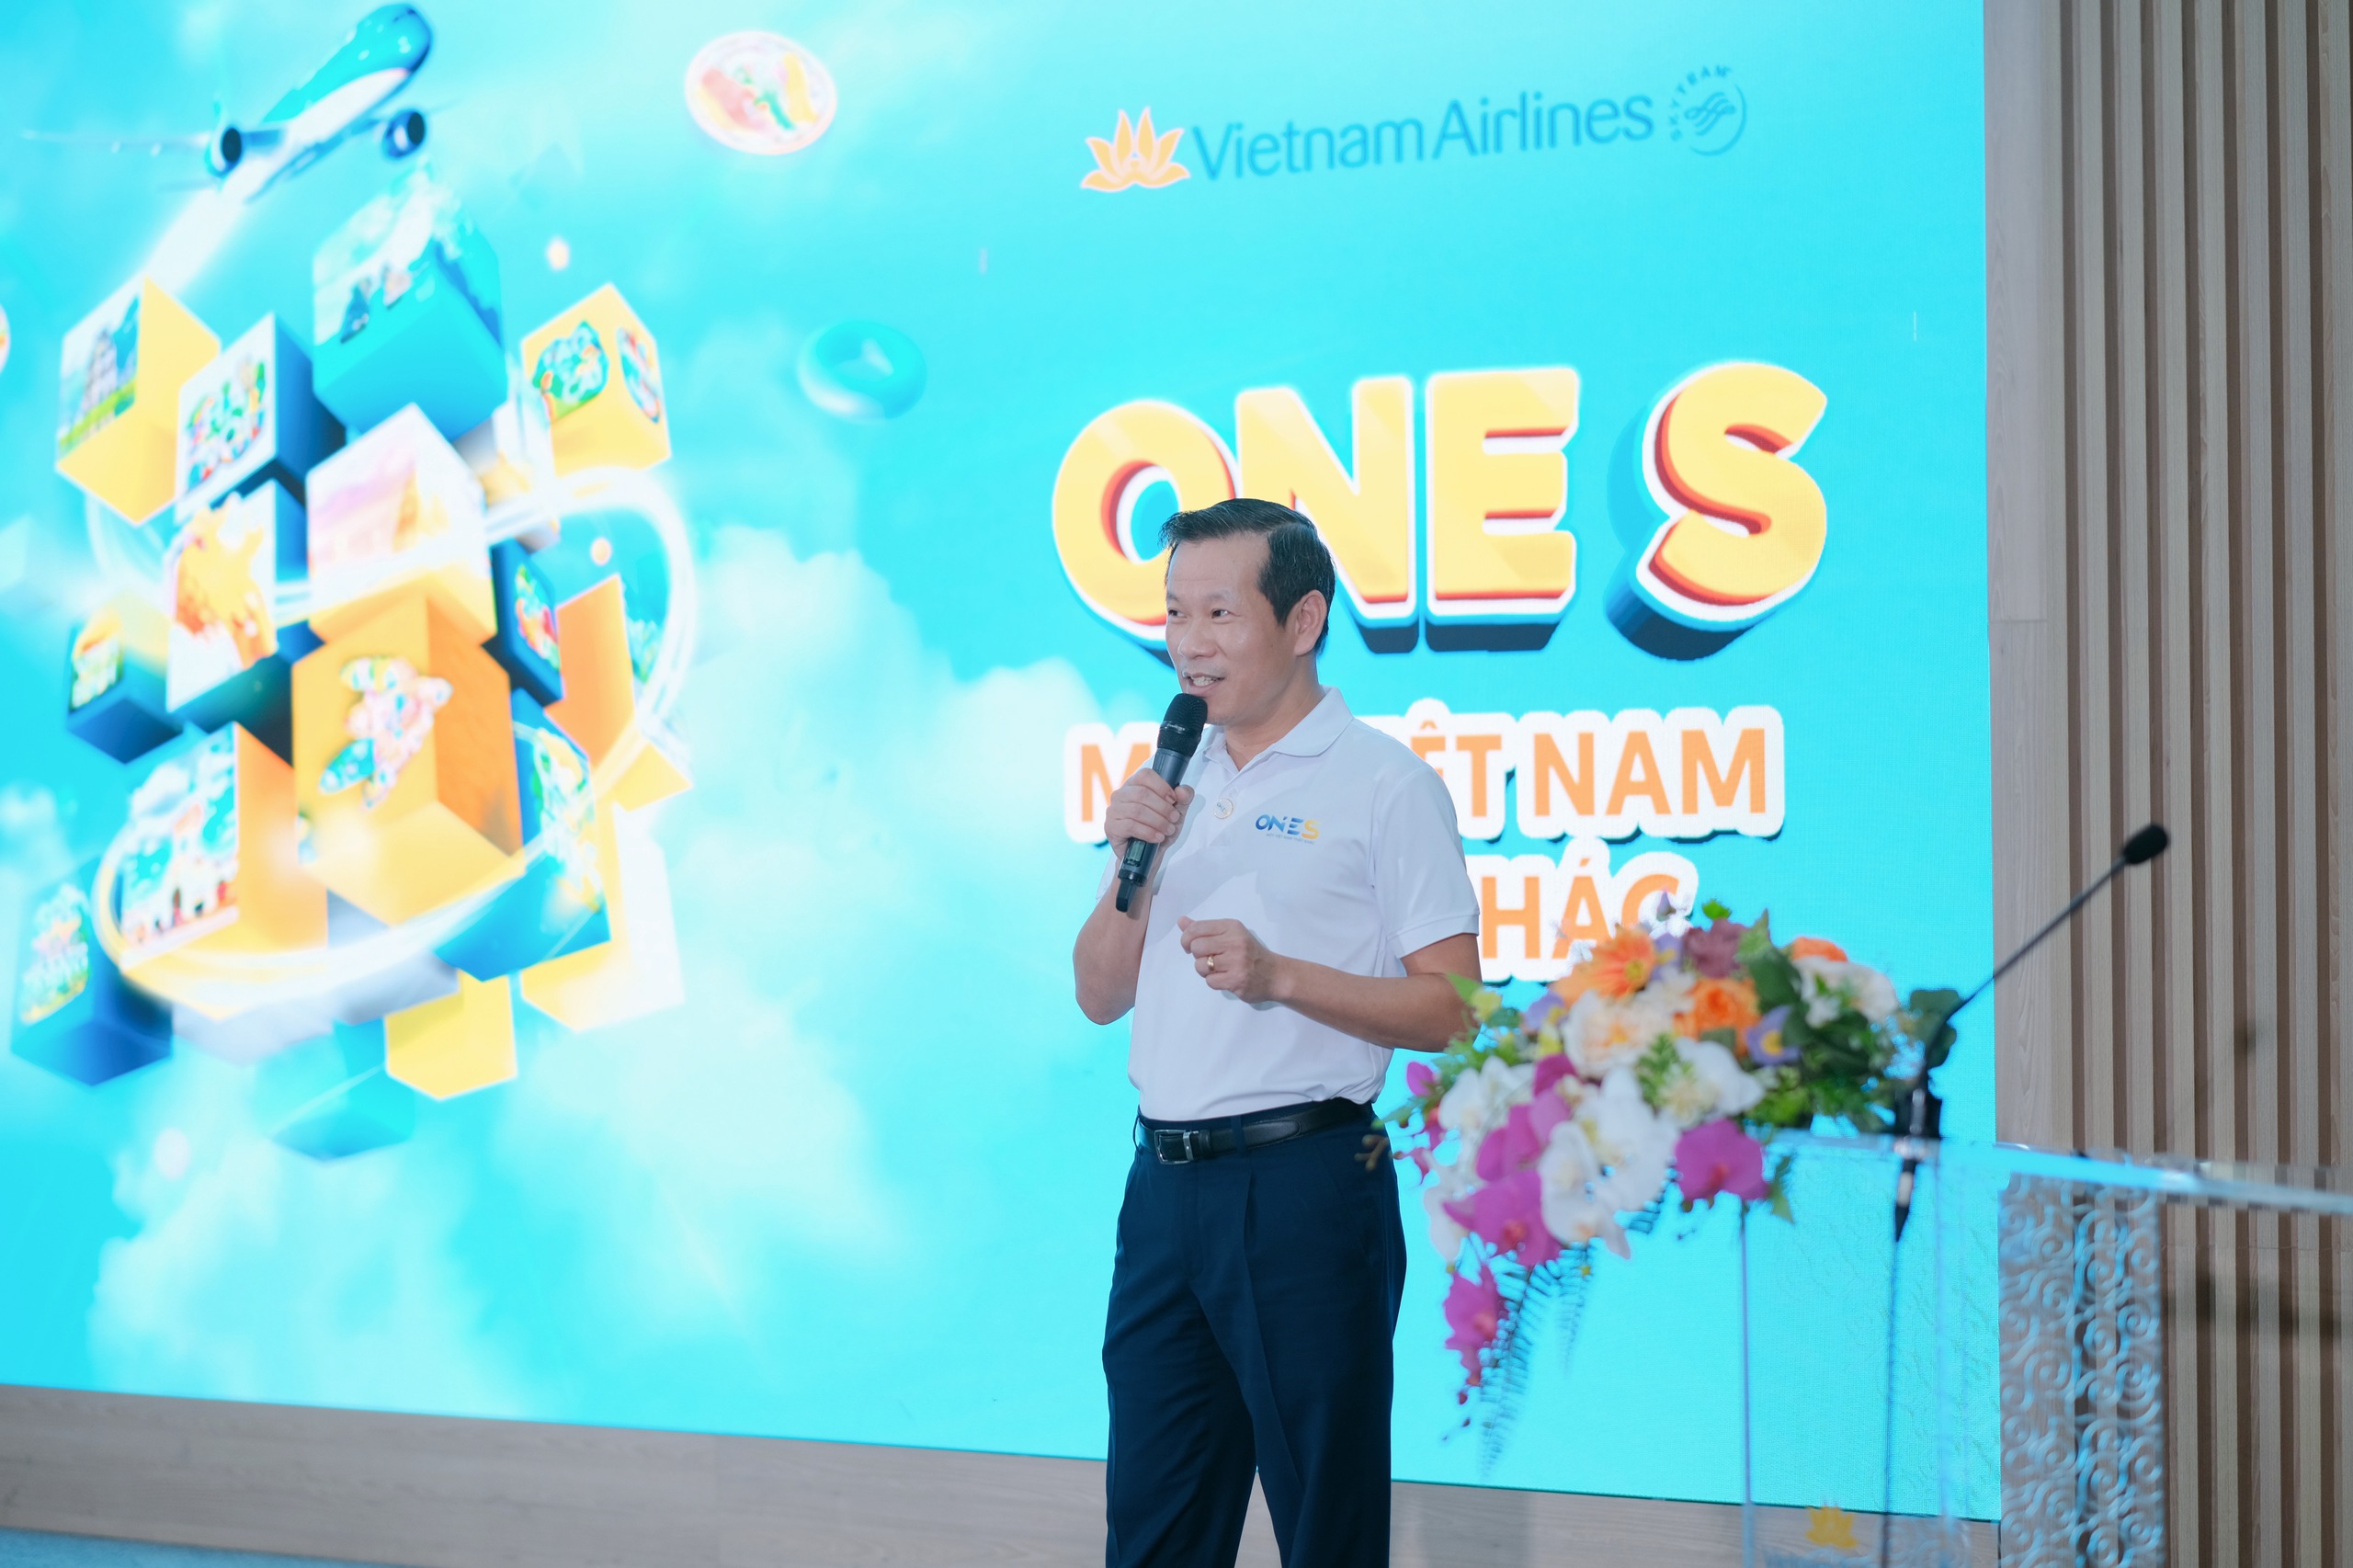 베트남항공은 TV360, VTVCab, Momo와 손을 잡고 One S 인터랙티브 게임을 개발했습니다. - 사진 2